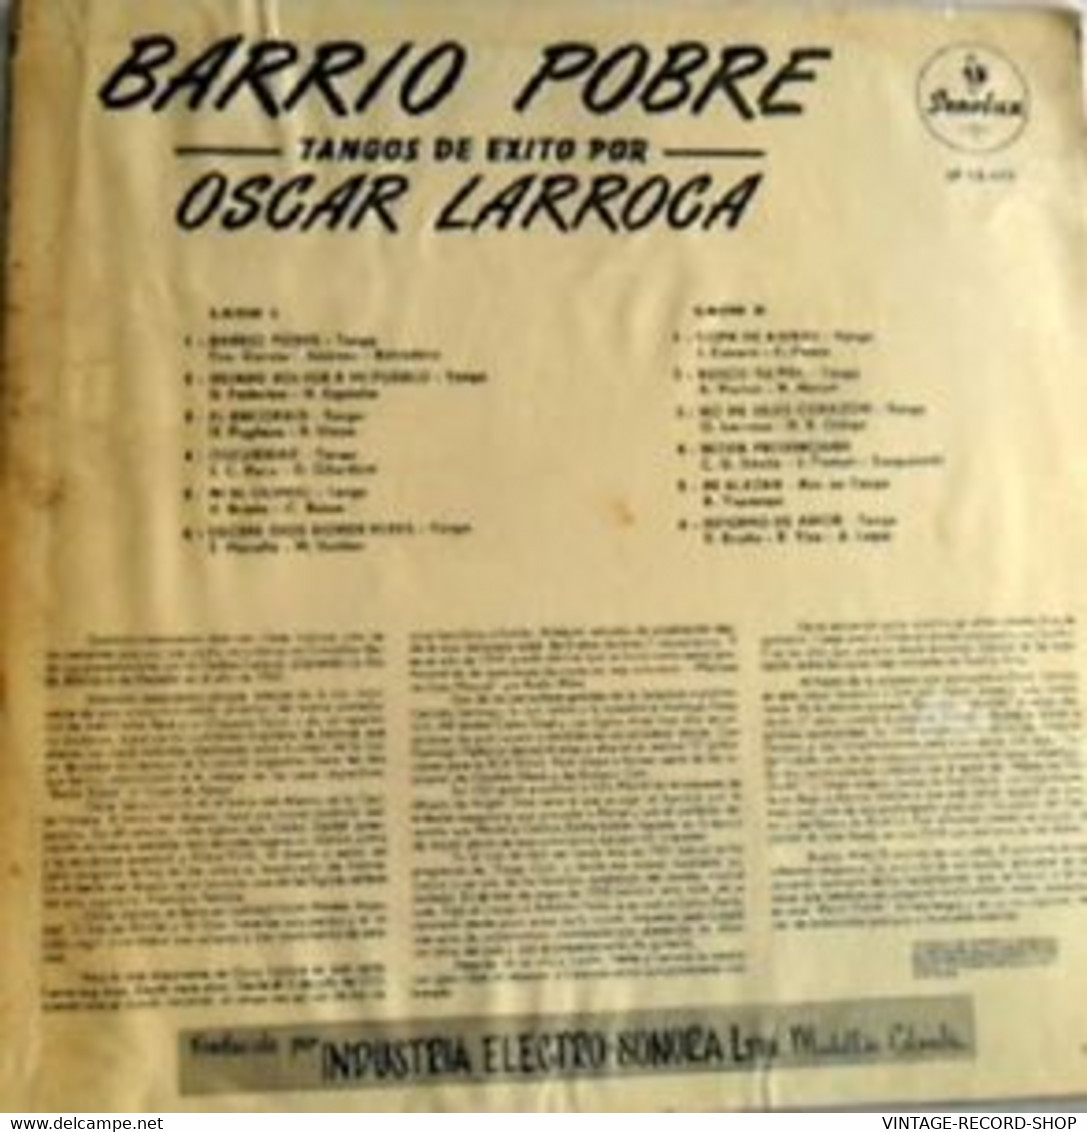 TANGO:OSCAR LARROCA TANGOS DE EXITO"BARRIO POBRE"COLLECTIBLE - Musiche Del Mondo